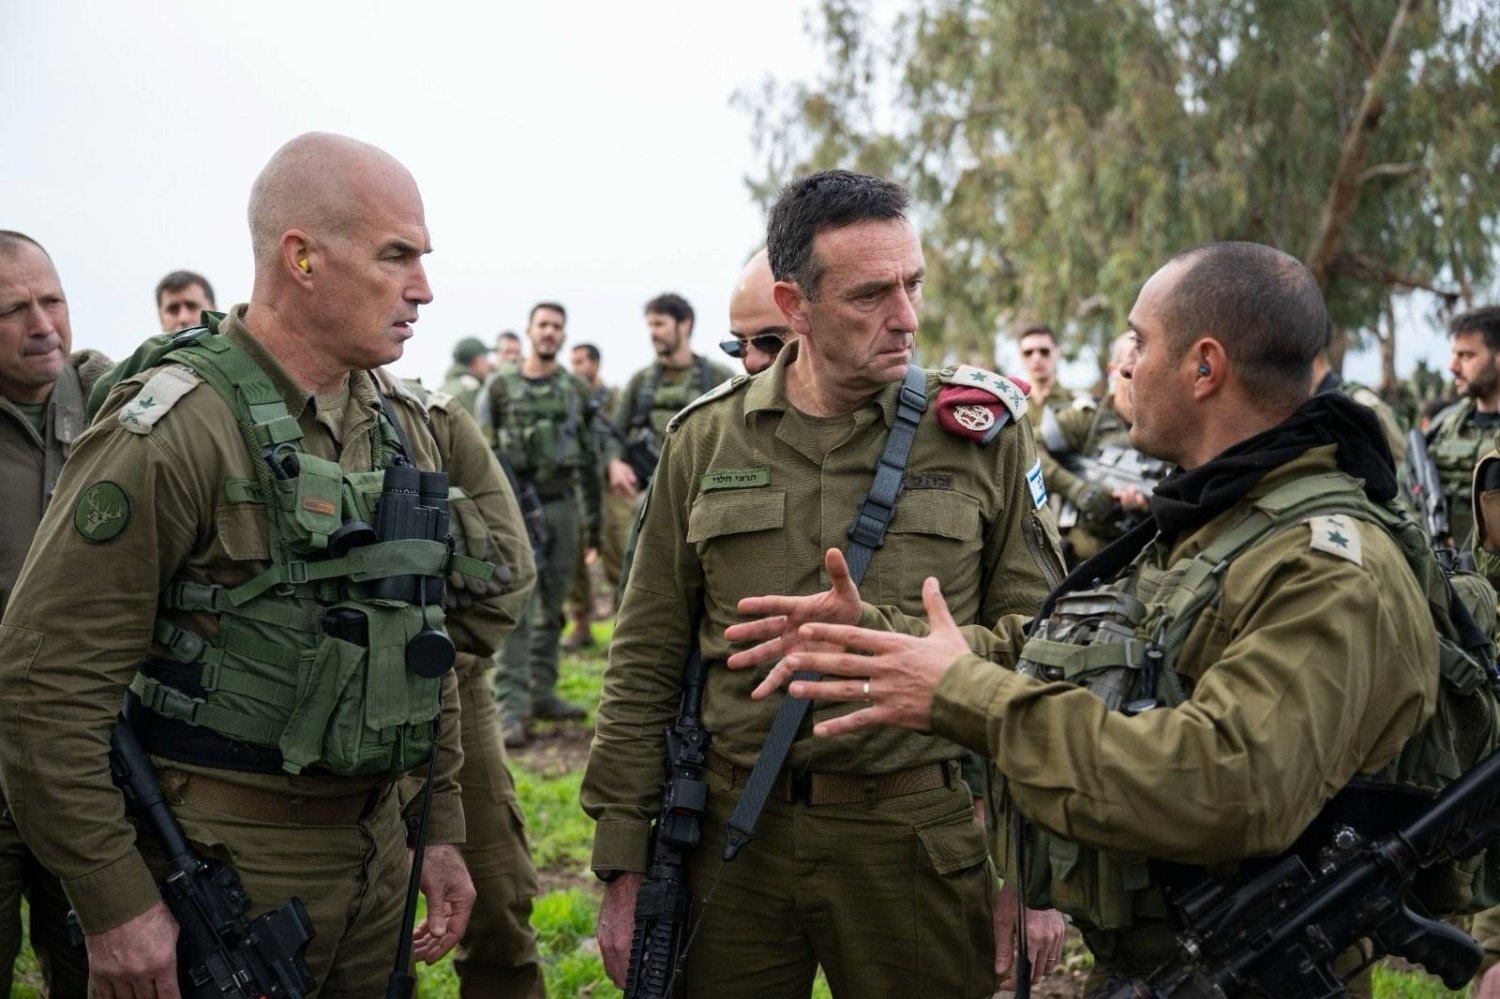 رئيس الأركان الاسرائيلي يصادق على خطط المراحل اللاحقة من الحرب